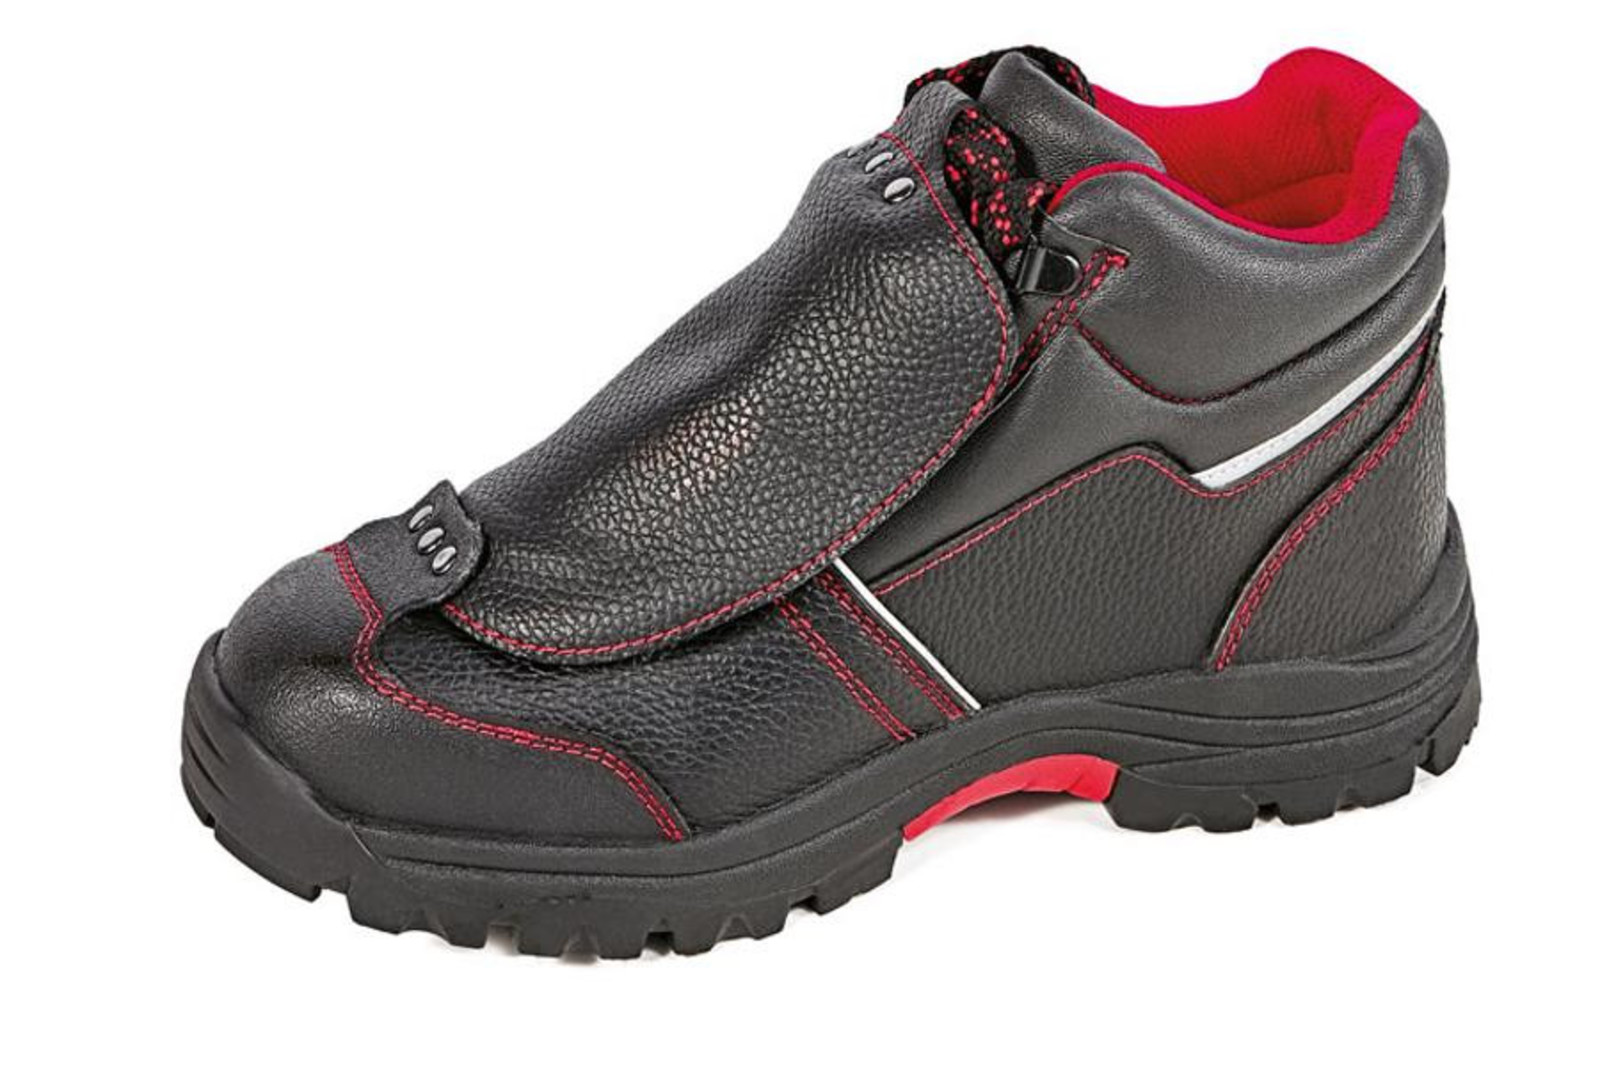 Bezpečnostná členková obuv Cerva Steeler Metatarsal S3 HRO M SRA  - veľkosť: 47, farba: čierna